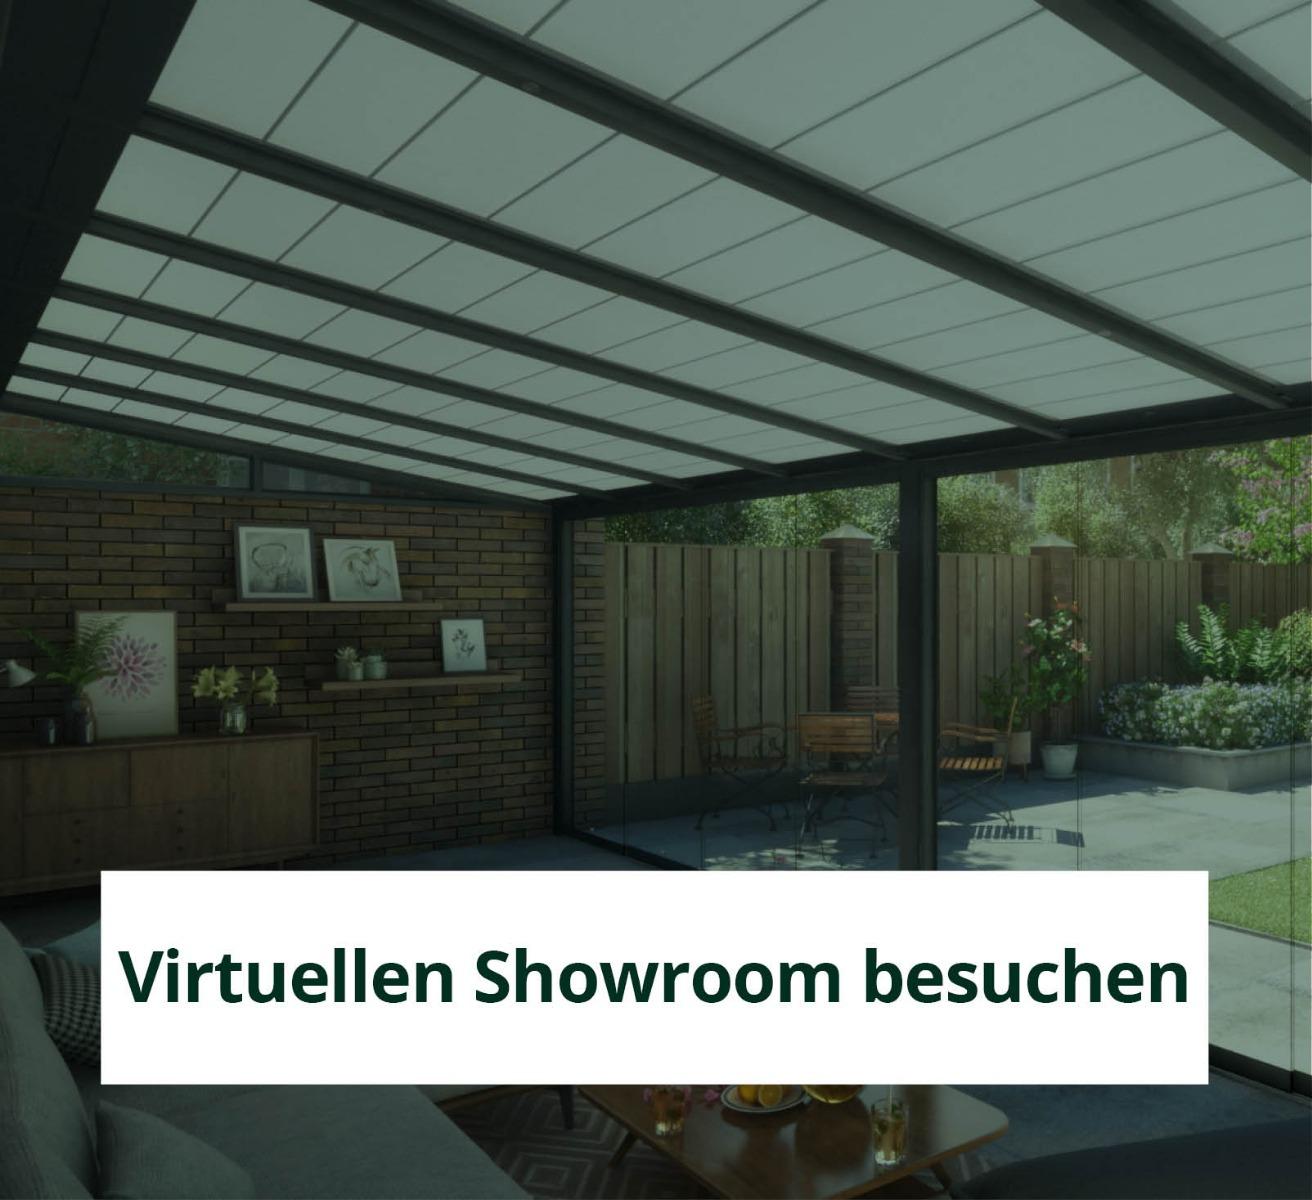 Besuchen Sie den virtuellen Showroom von Tuinmaximaal